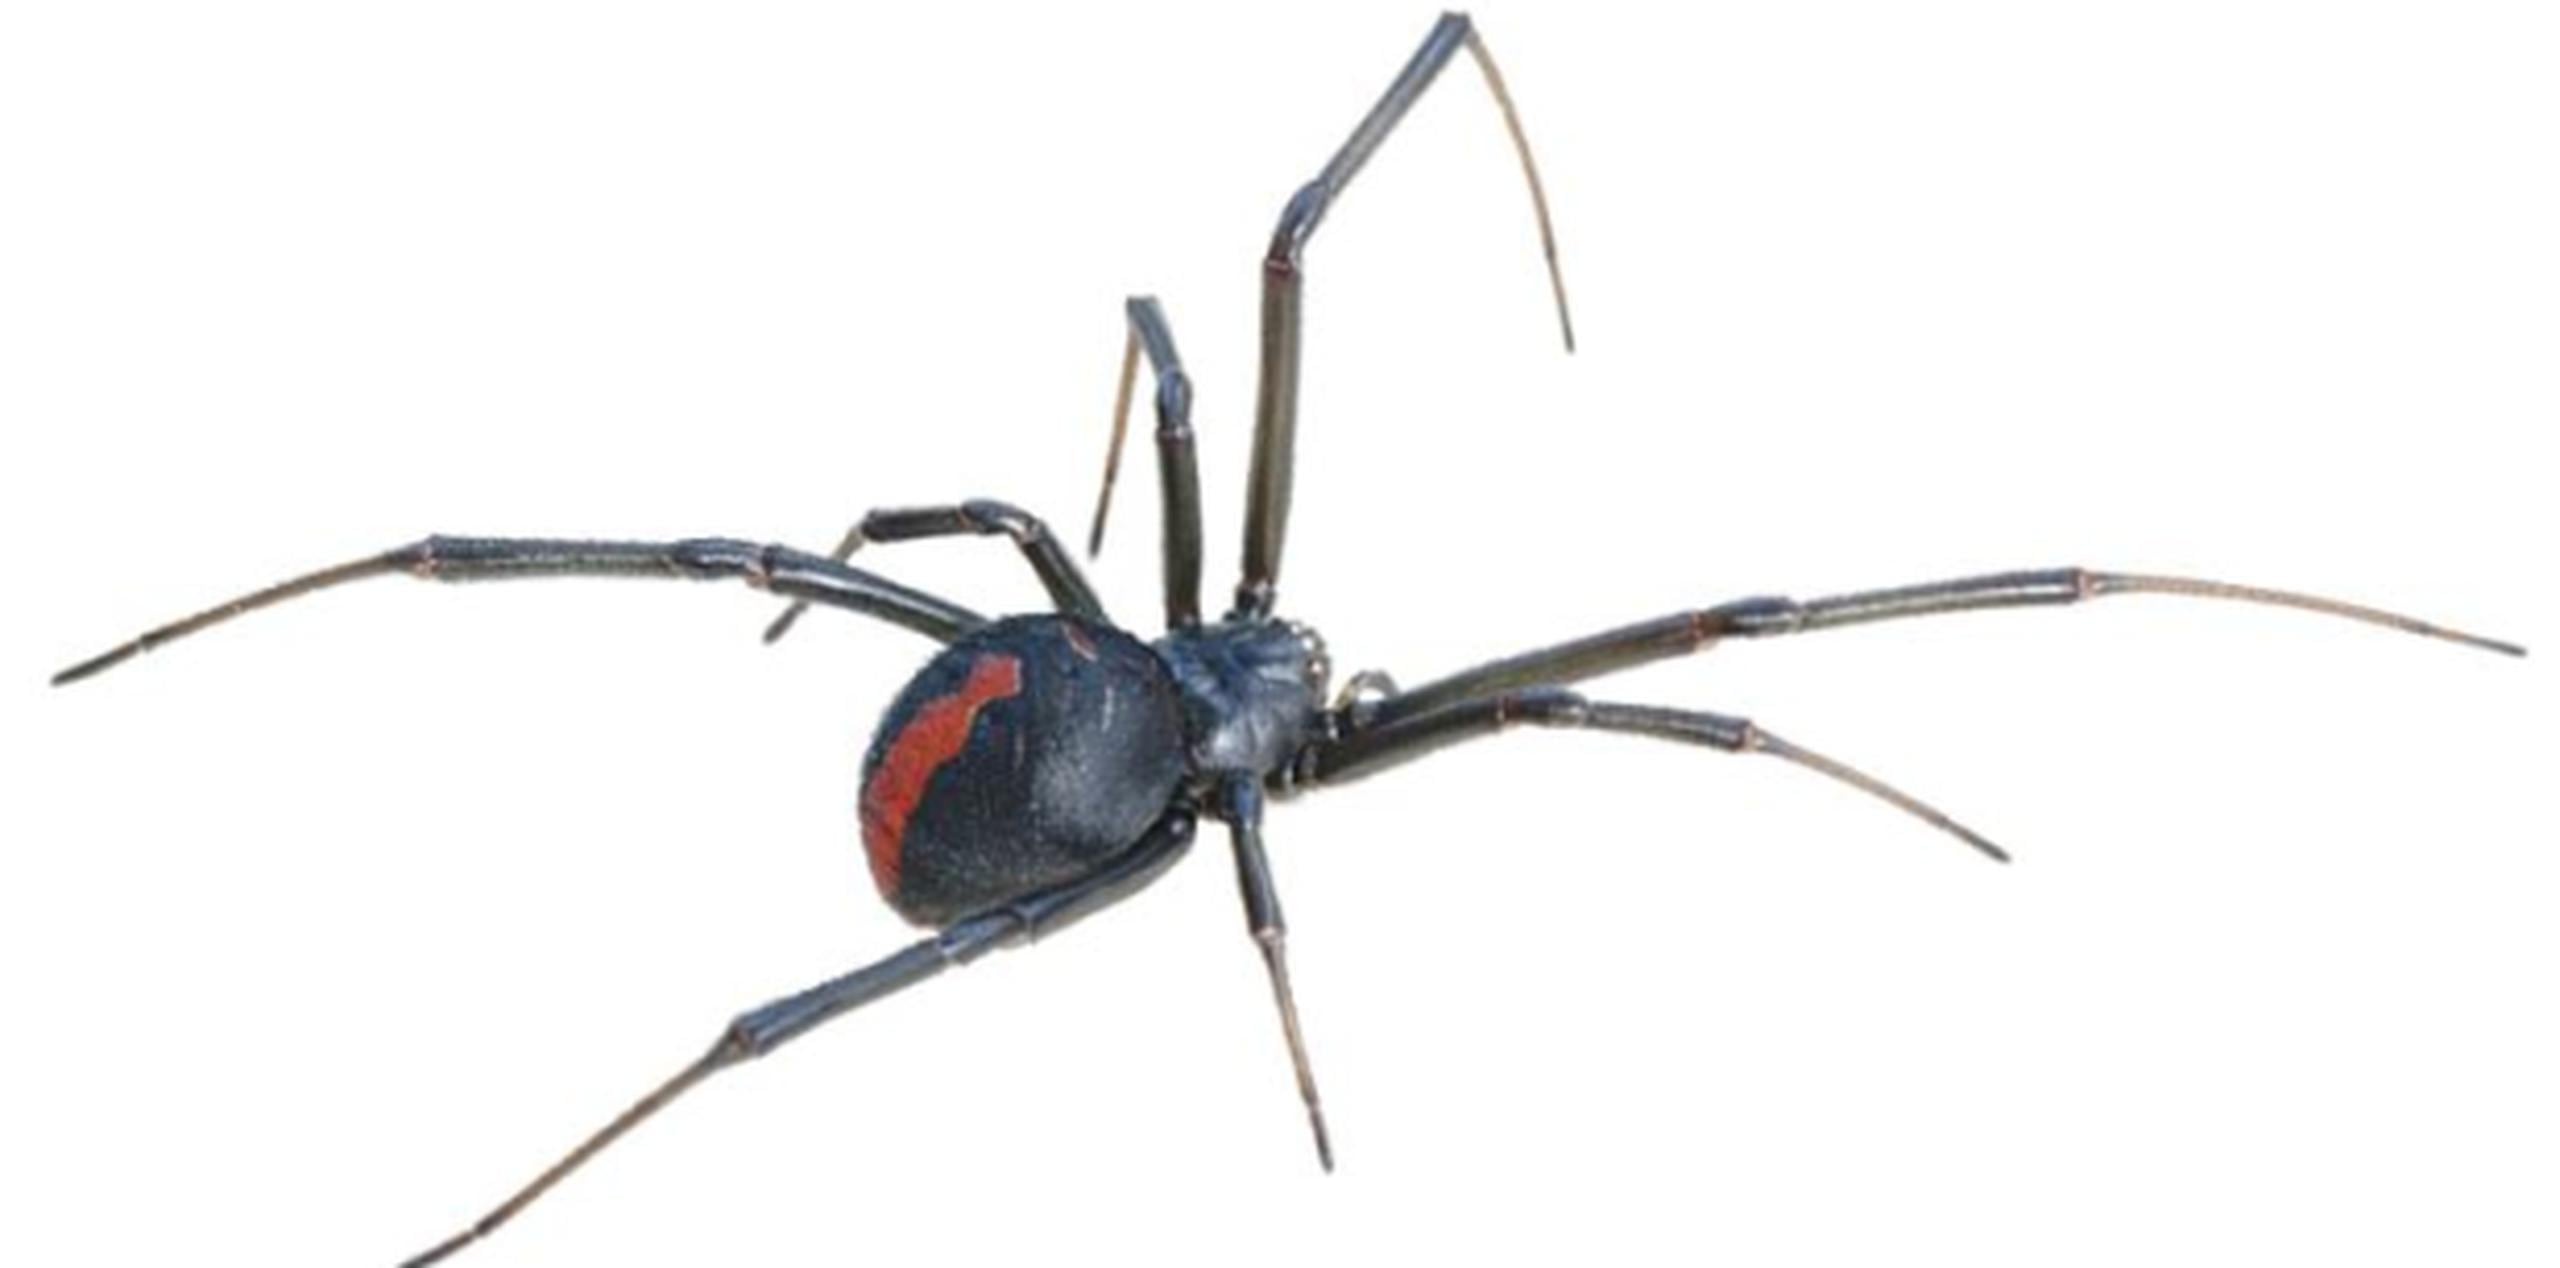 Describió a la araña viuda negra como una pequeña, de aproximadamente tres cuartos de pulgada, con un distintivo color negro bien intenso, con una marca que parece un relojito de arena en la parte inferior del abdomen de color rojo o naranja. (Archivo)